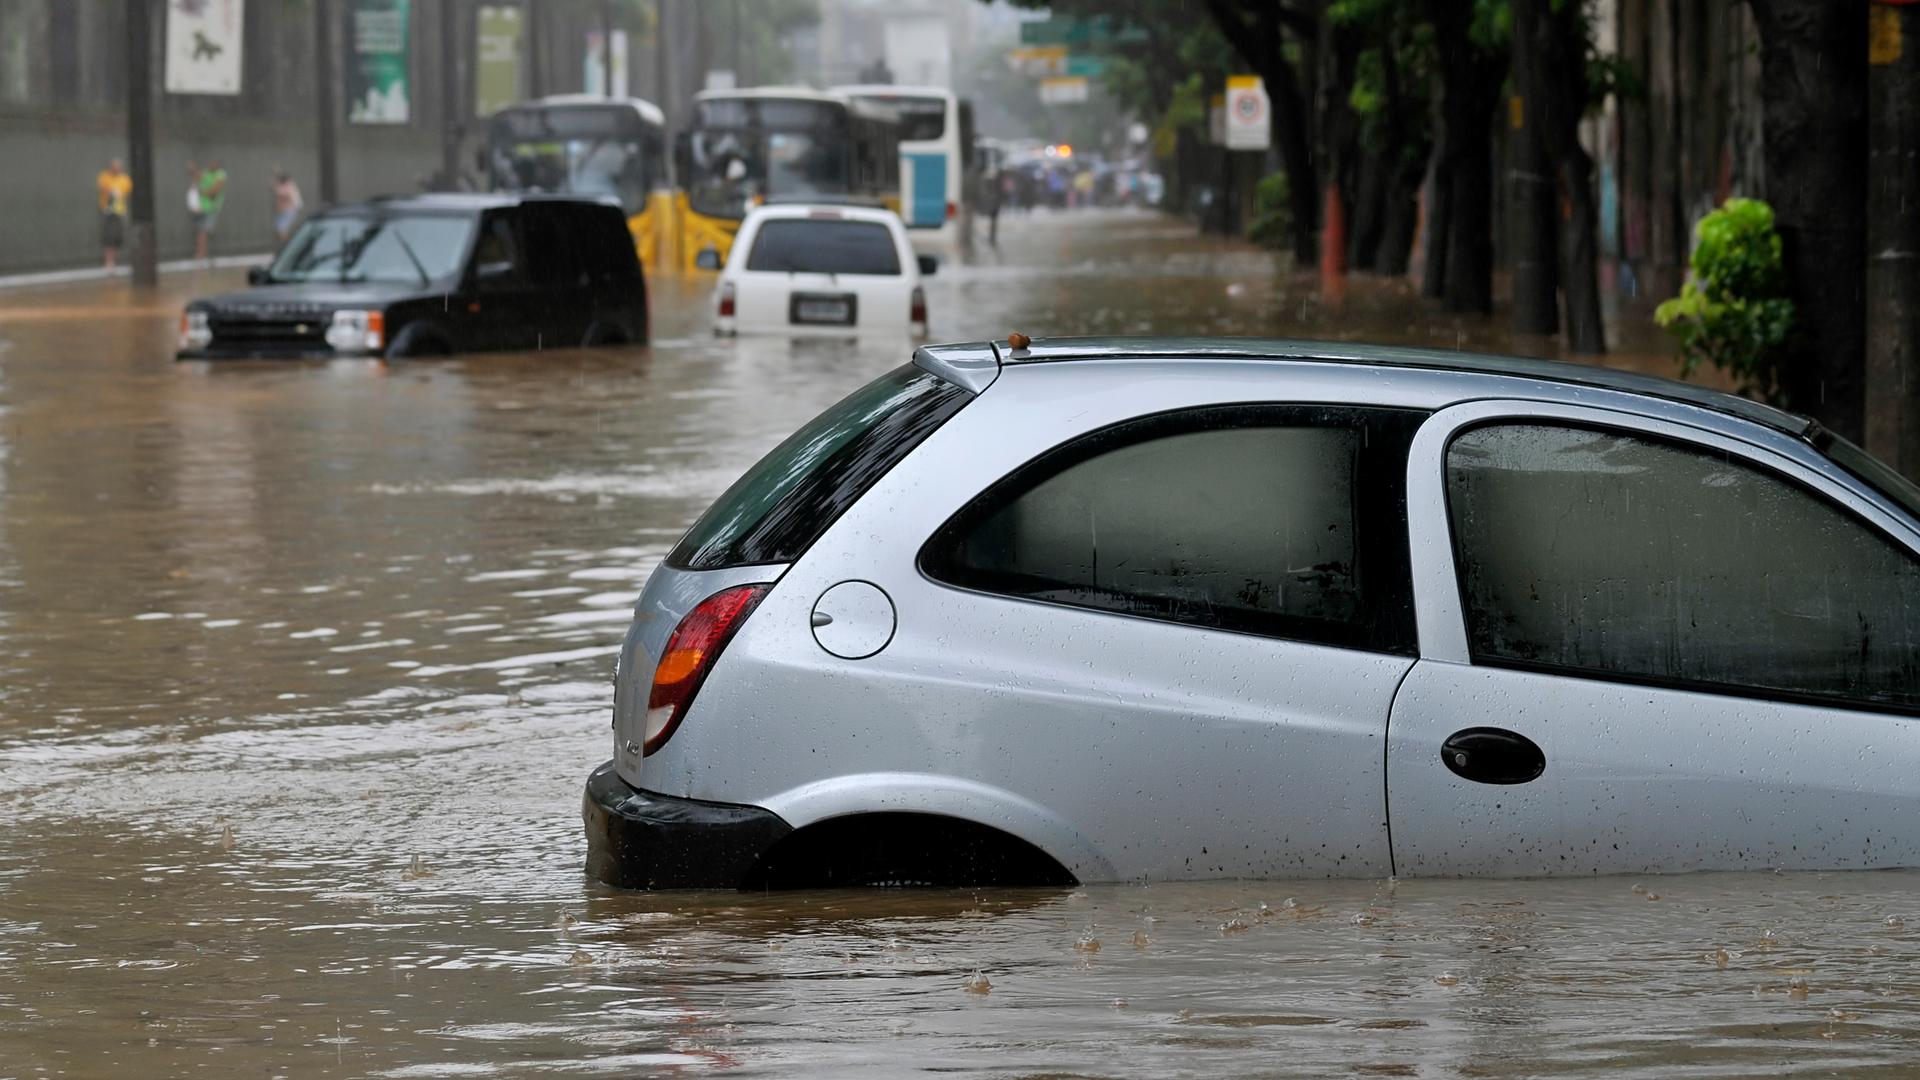 Ein Auto steckt nach einem Starkregen in der Stadt in den Fluten fest, das Wasser steht bis zum Autofenster.